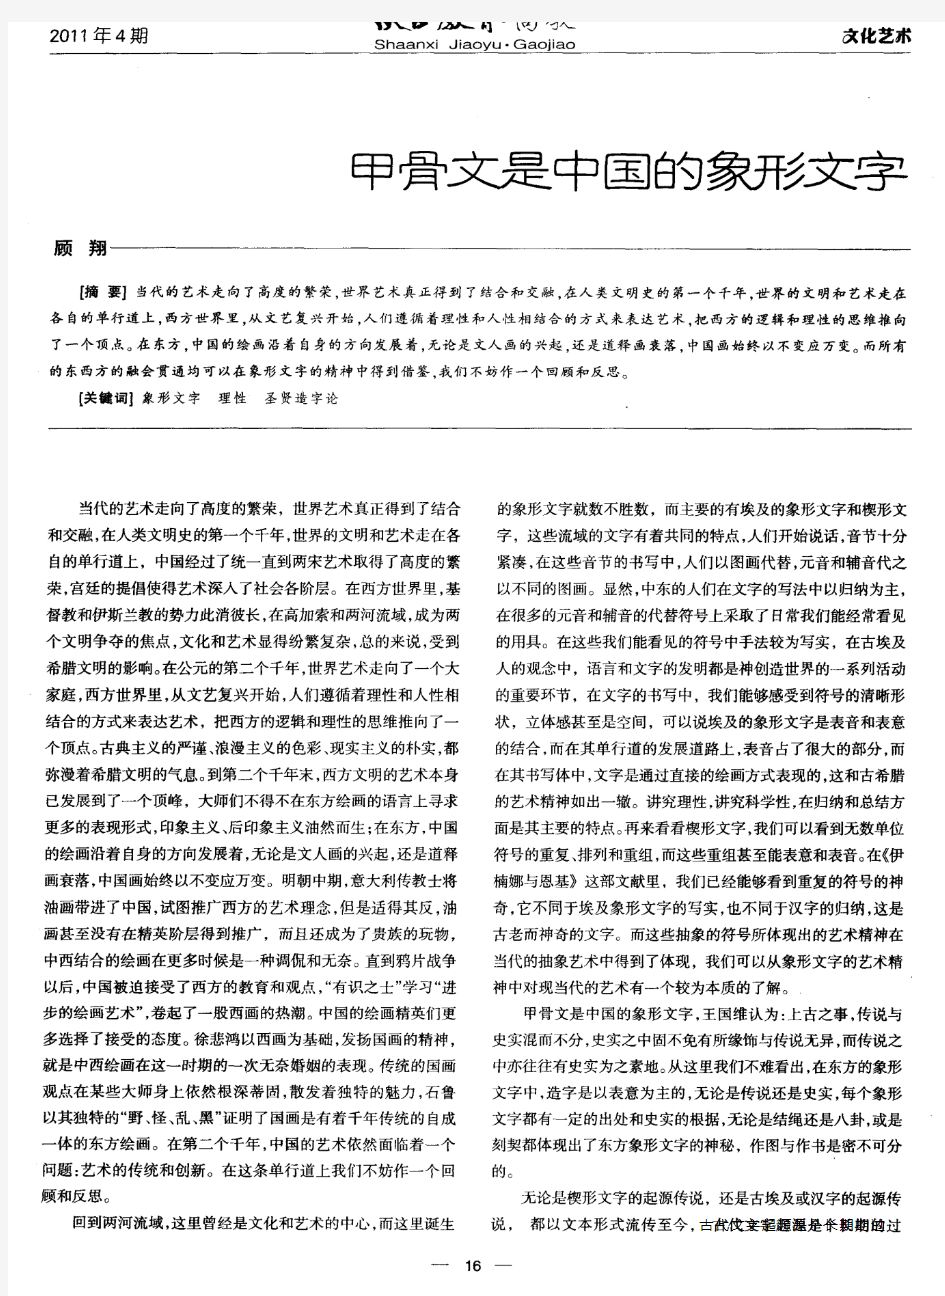 甲骨文是中国的象形文字